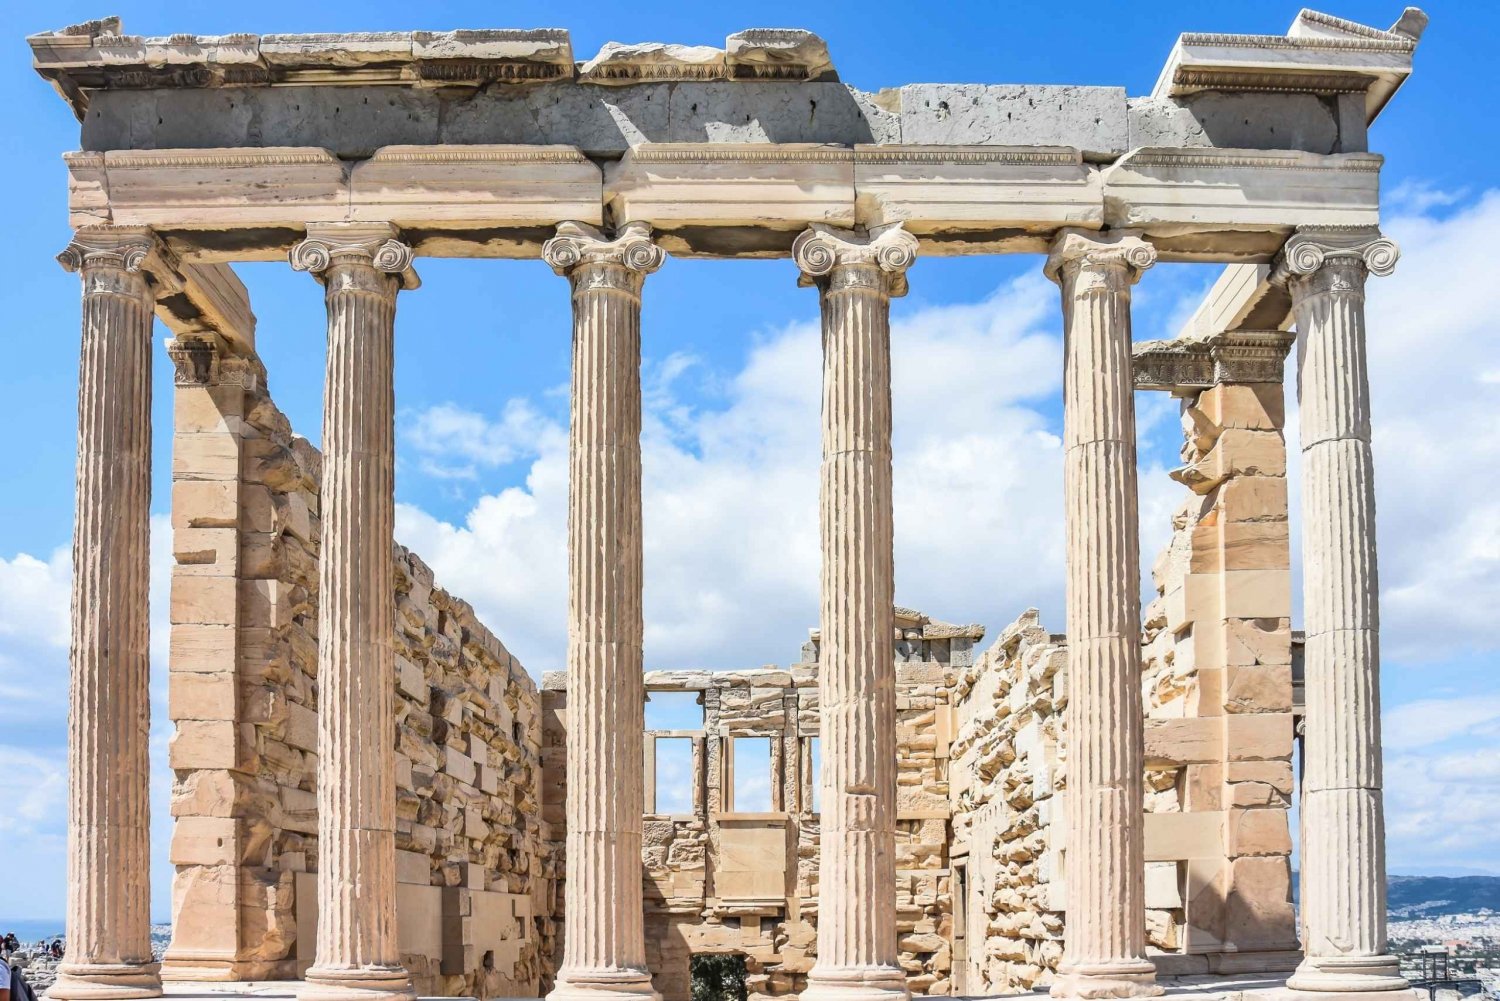 Atenas: Visita guiada à Acrópole e ao Partenon com ingressos opcionais